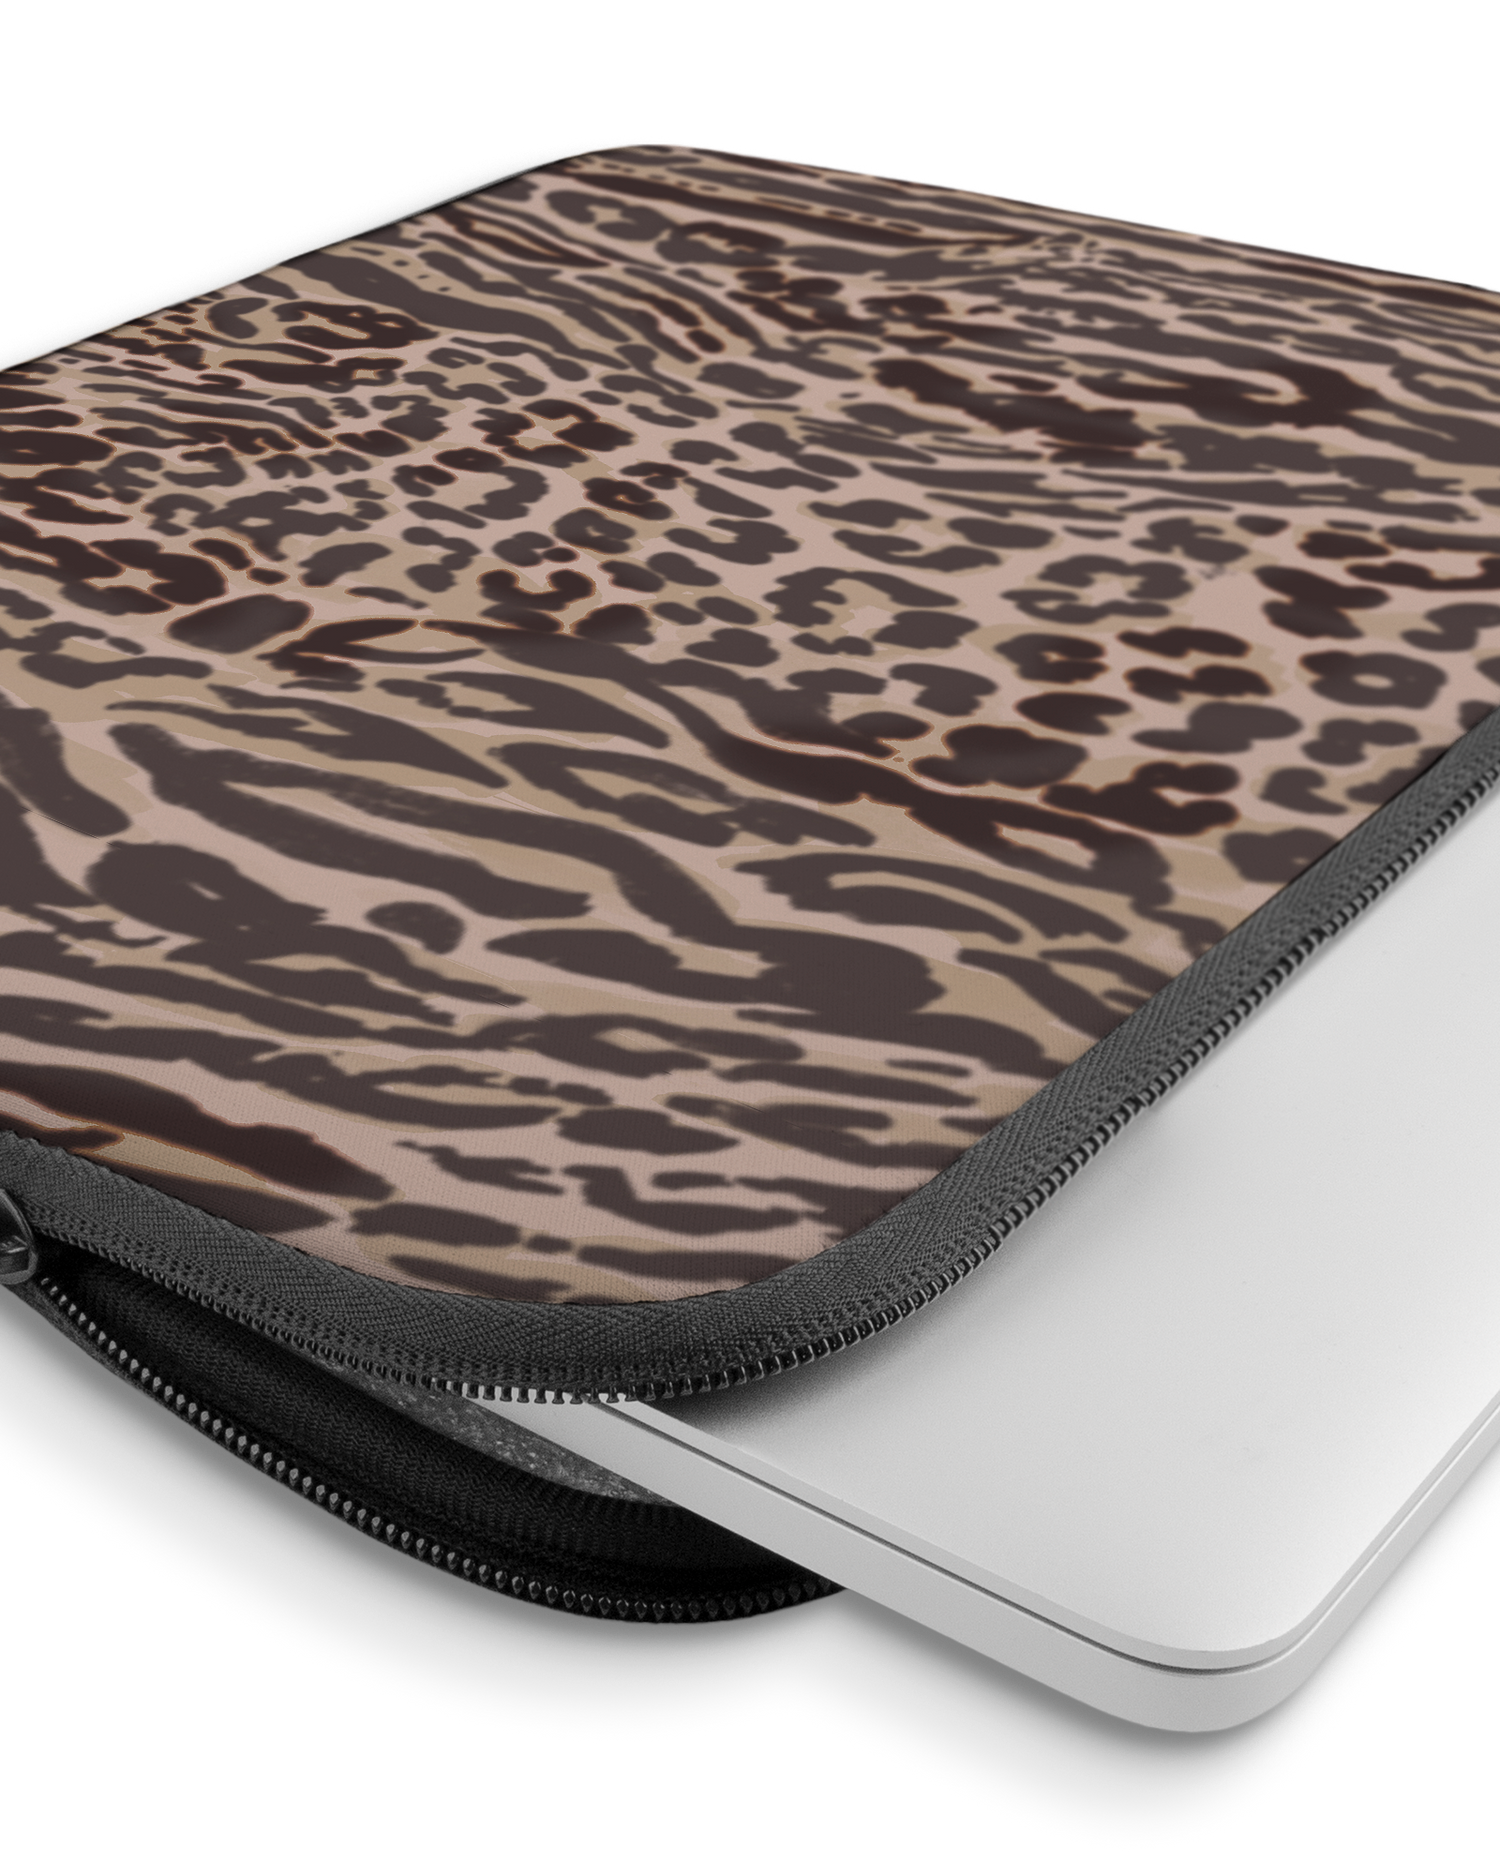 Animal Skin Tough Love Laptophülle 15 Zoll mit Gerät im Inneren